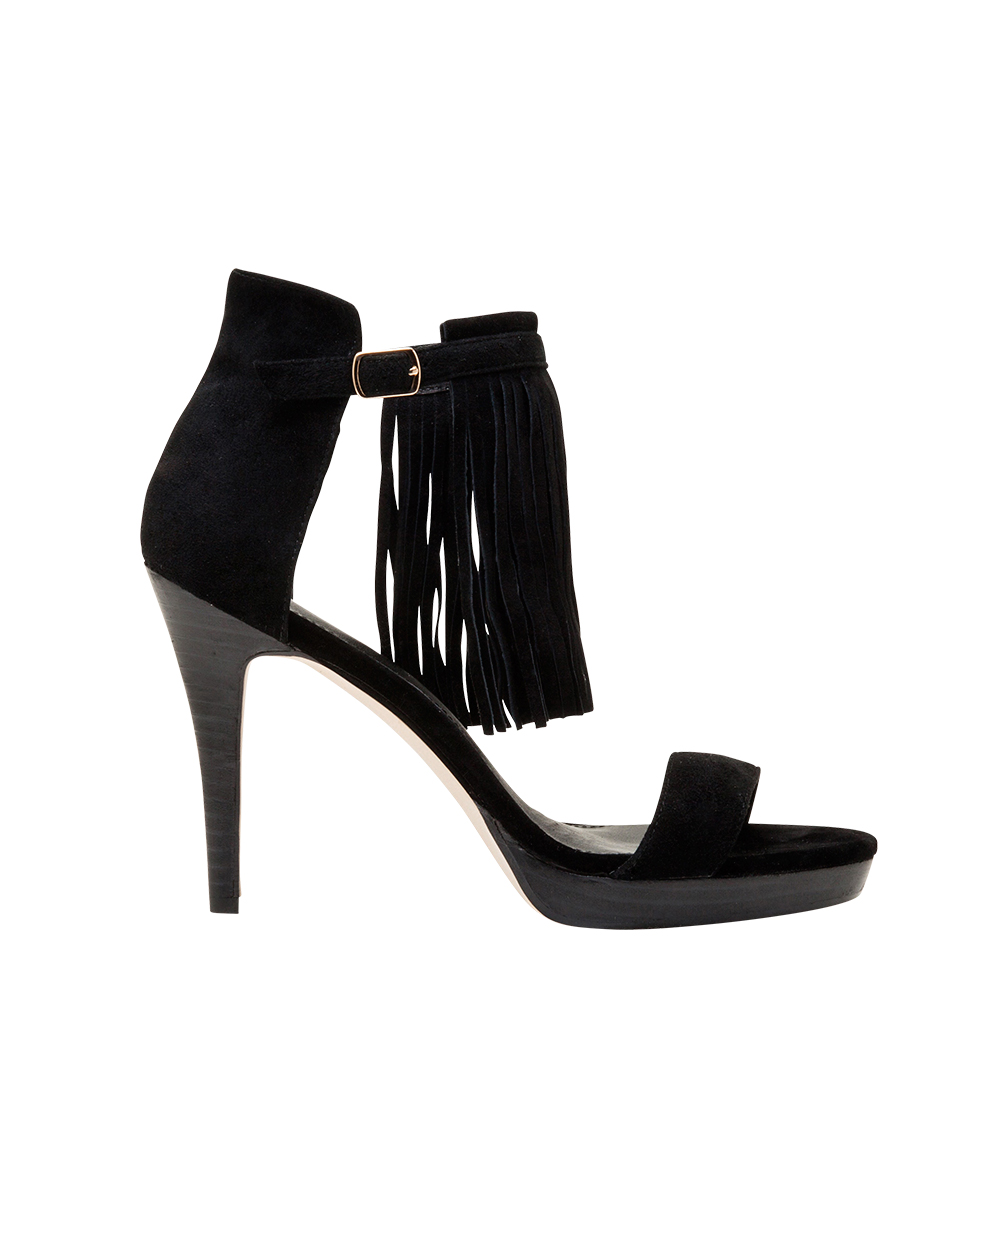 Overland heels, $209.90